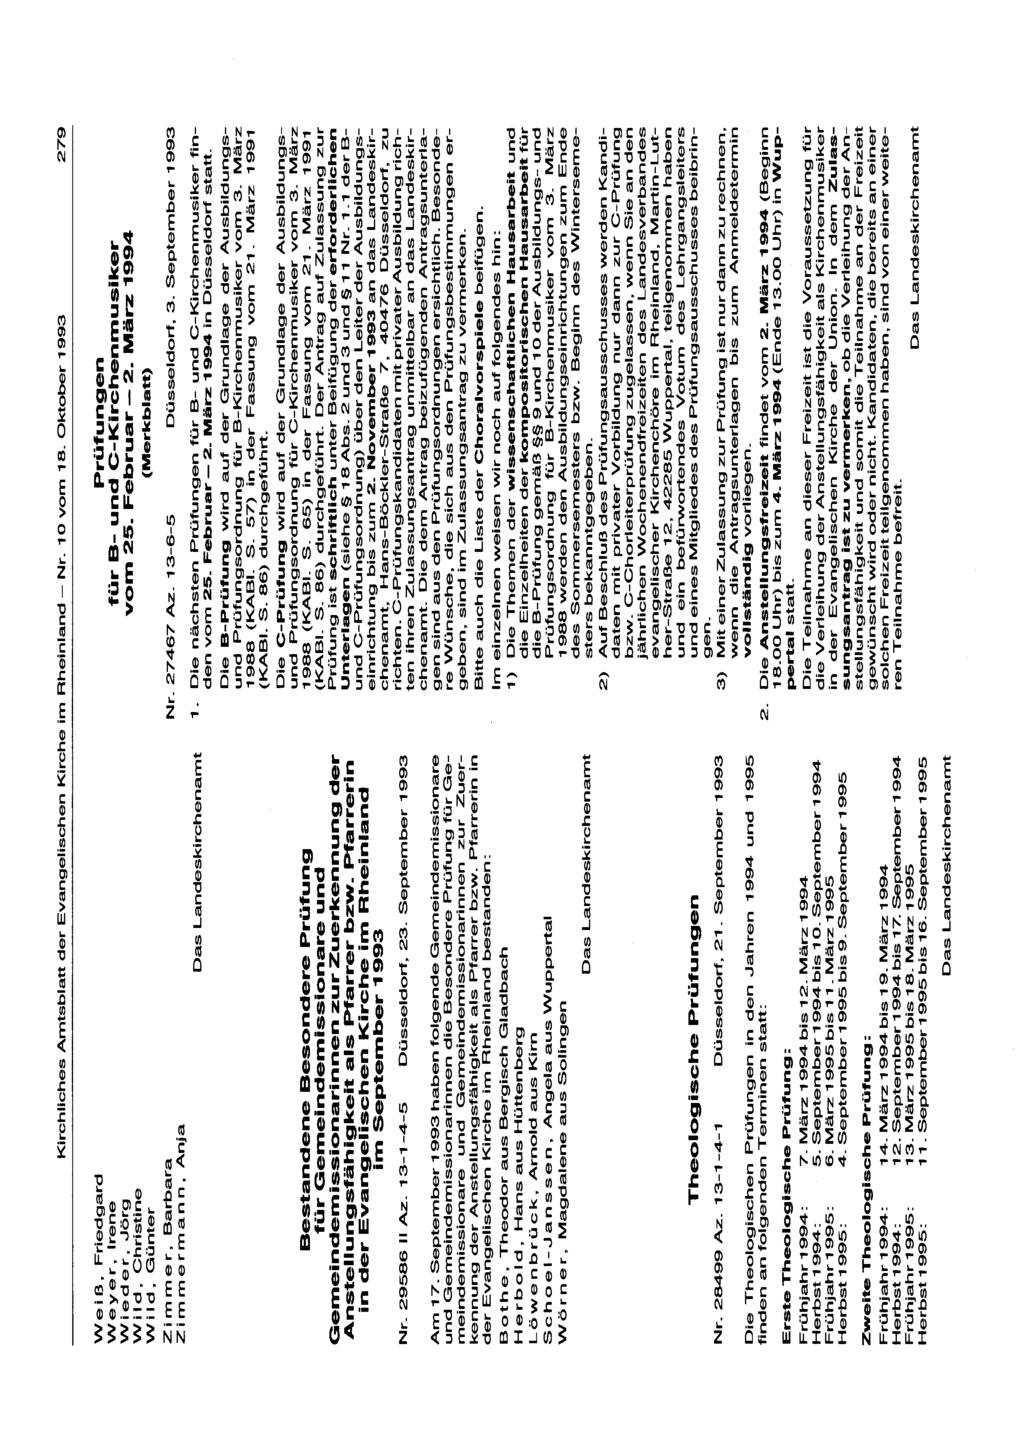 Kirchliches Amtsblatt der Evangelischen Kirche im Rheinland -Nr. 10 vom 18. Oktober 1993 279 We i ß, Friedgard Weyer,lrene Wieder, Jörg W I I d, Christine Wild,.